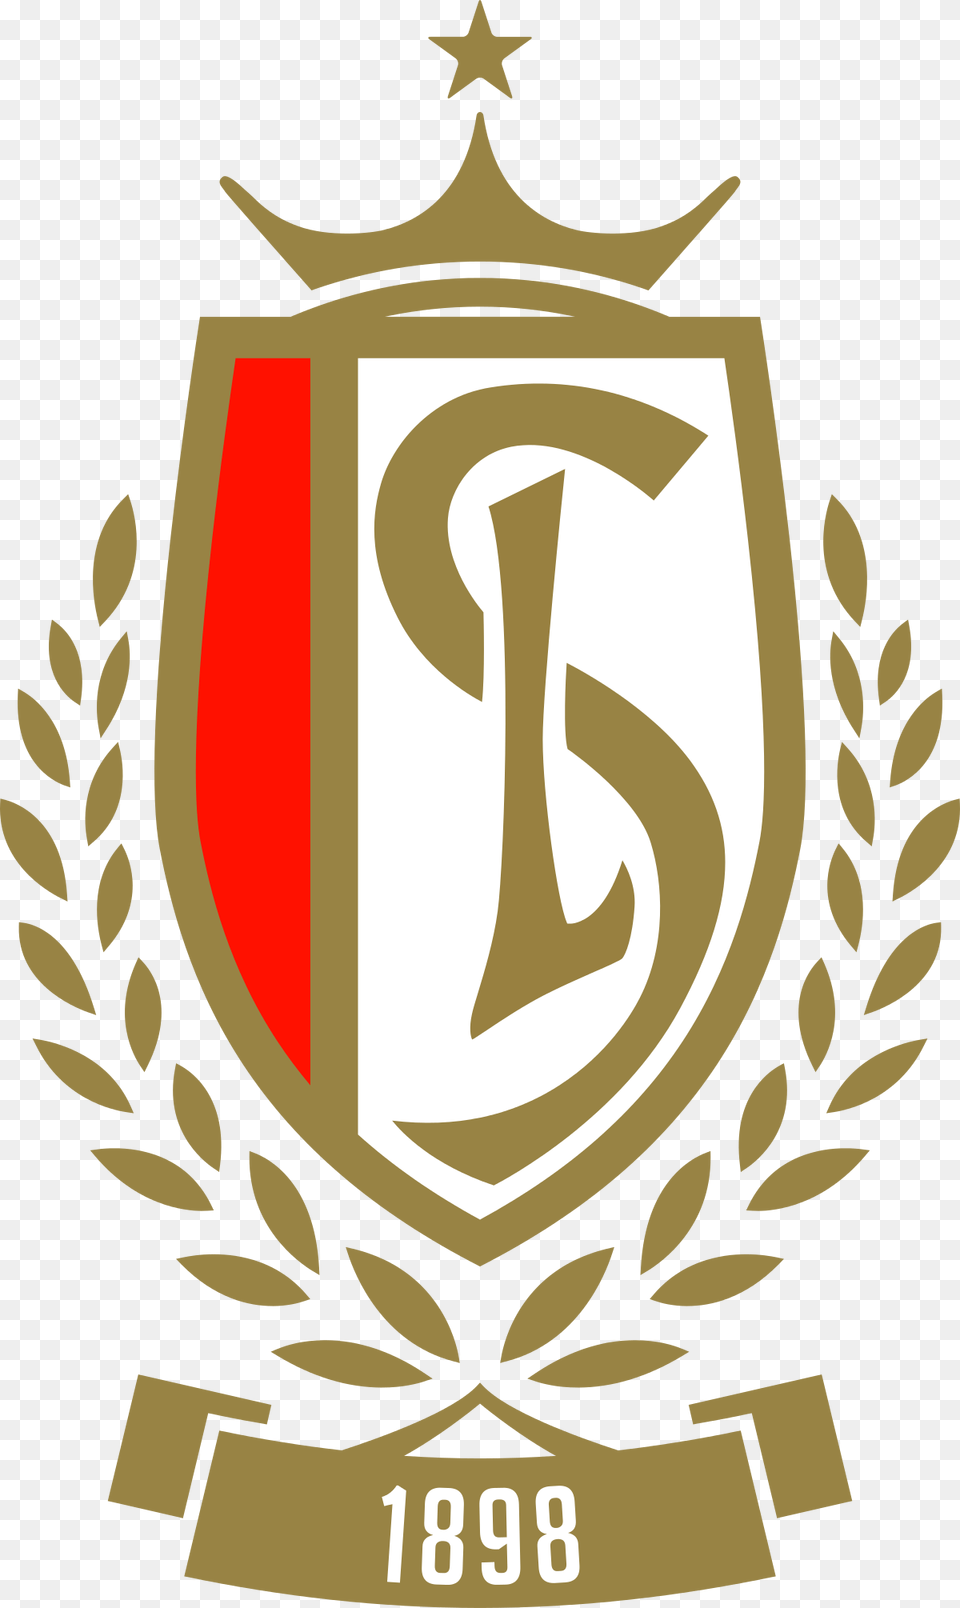 Royal Standard De Lige Logo Standard Lige, Emblem, Symbol Free Png